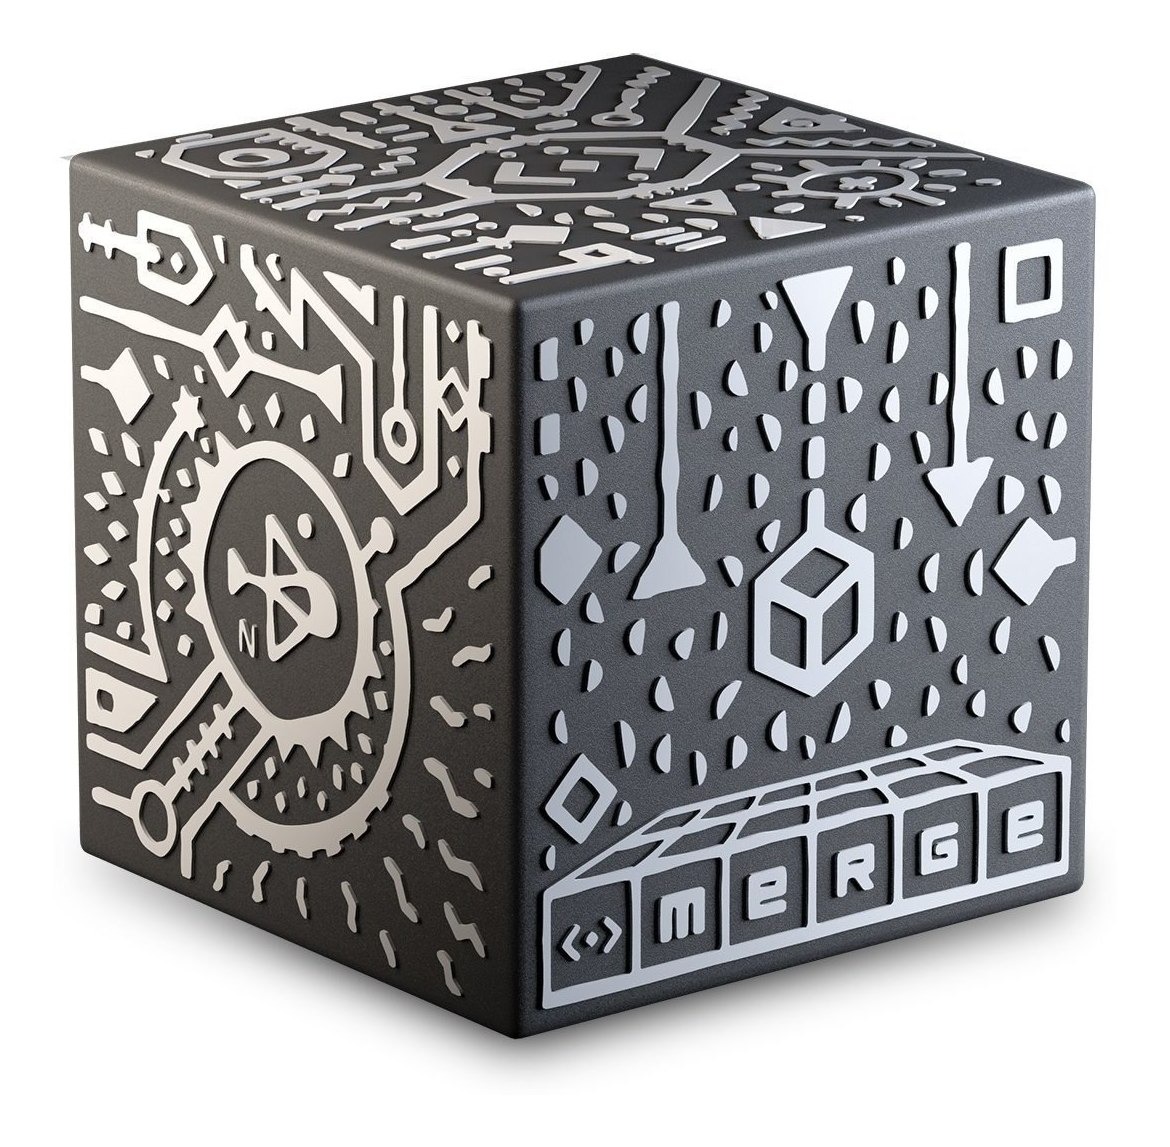 1 - Merge Cube